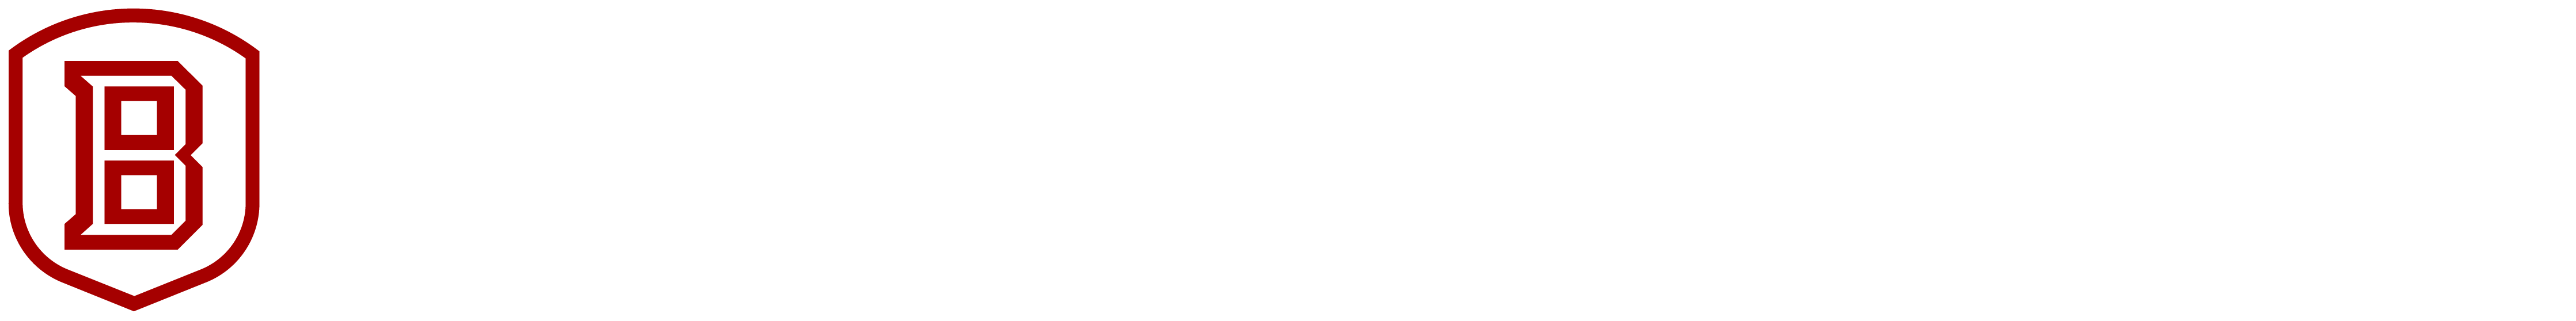 Bradley University Logo